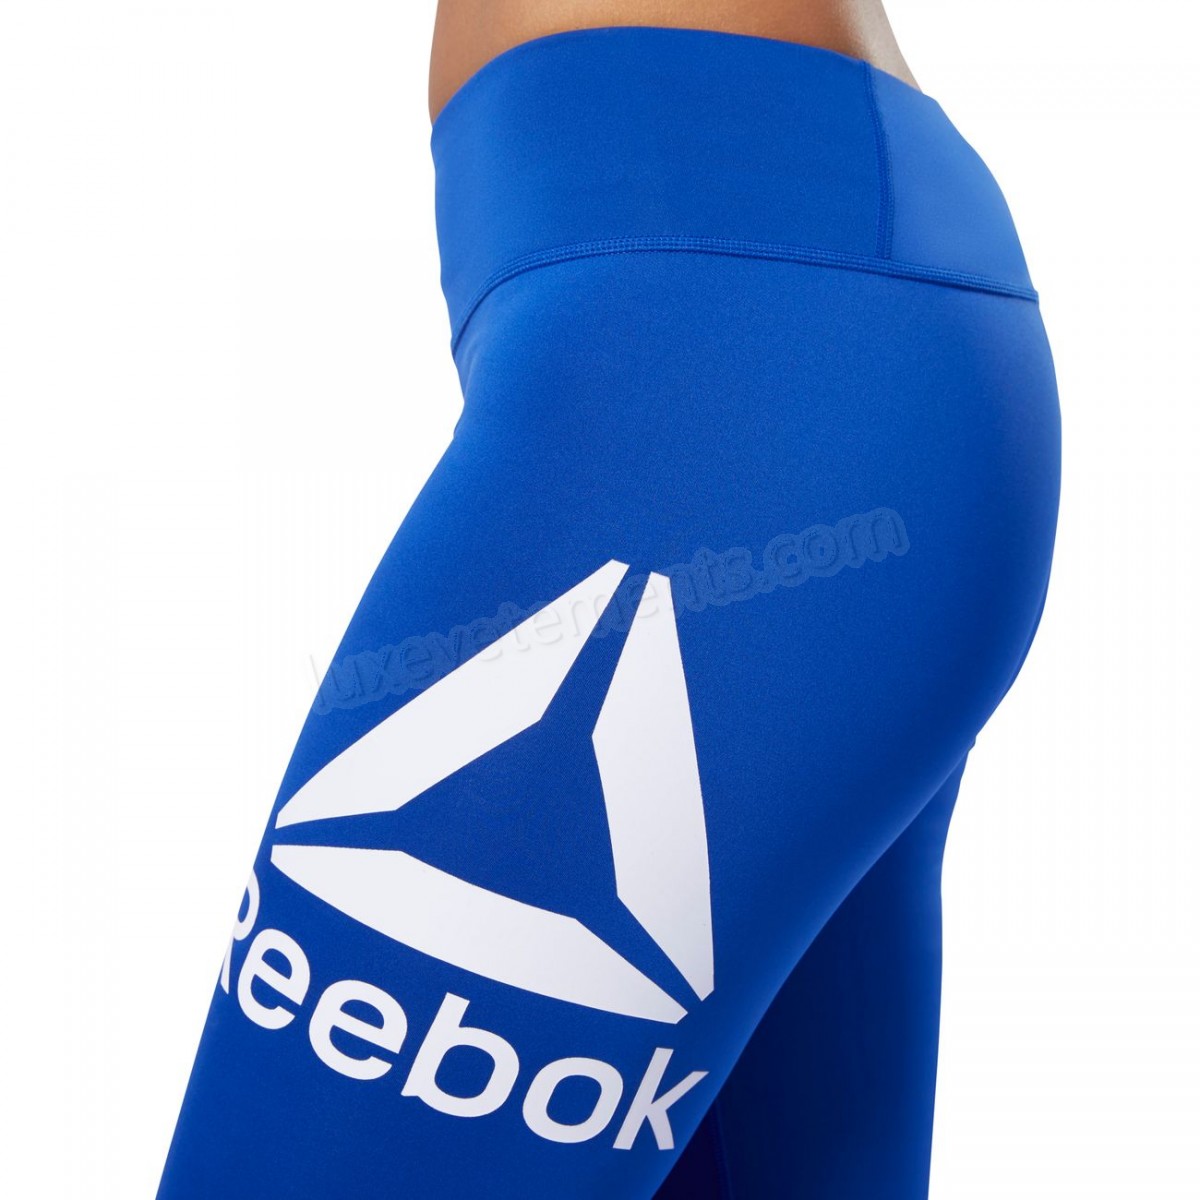 Reebok-Fitness femme REEBOK Reebok Workout Ready Big Delta Big Vente en ligne - -28